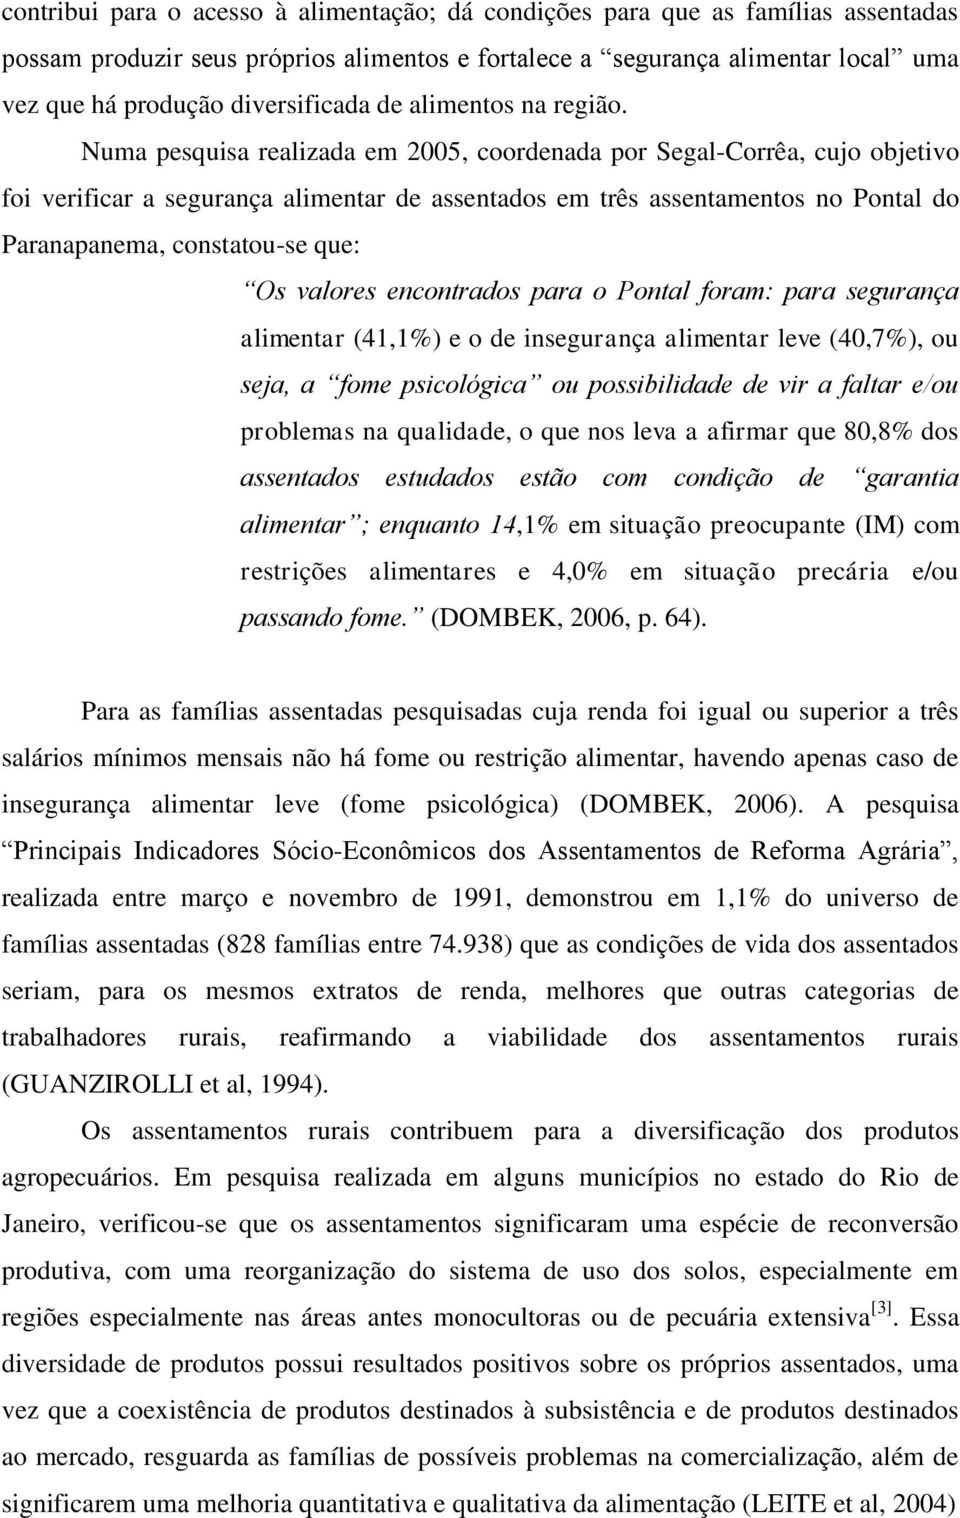 Numa pesquisa realizada em 2005, coordenada por Segal-Corrêa, cujo objetivo foi verificar a segurança alimentar de assentados em três assentamentos no Pontal do Paranapanema, constatou-se que: Os